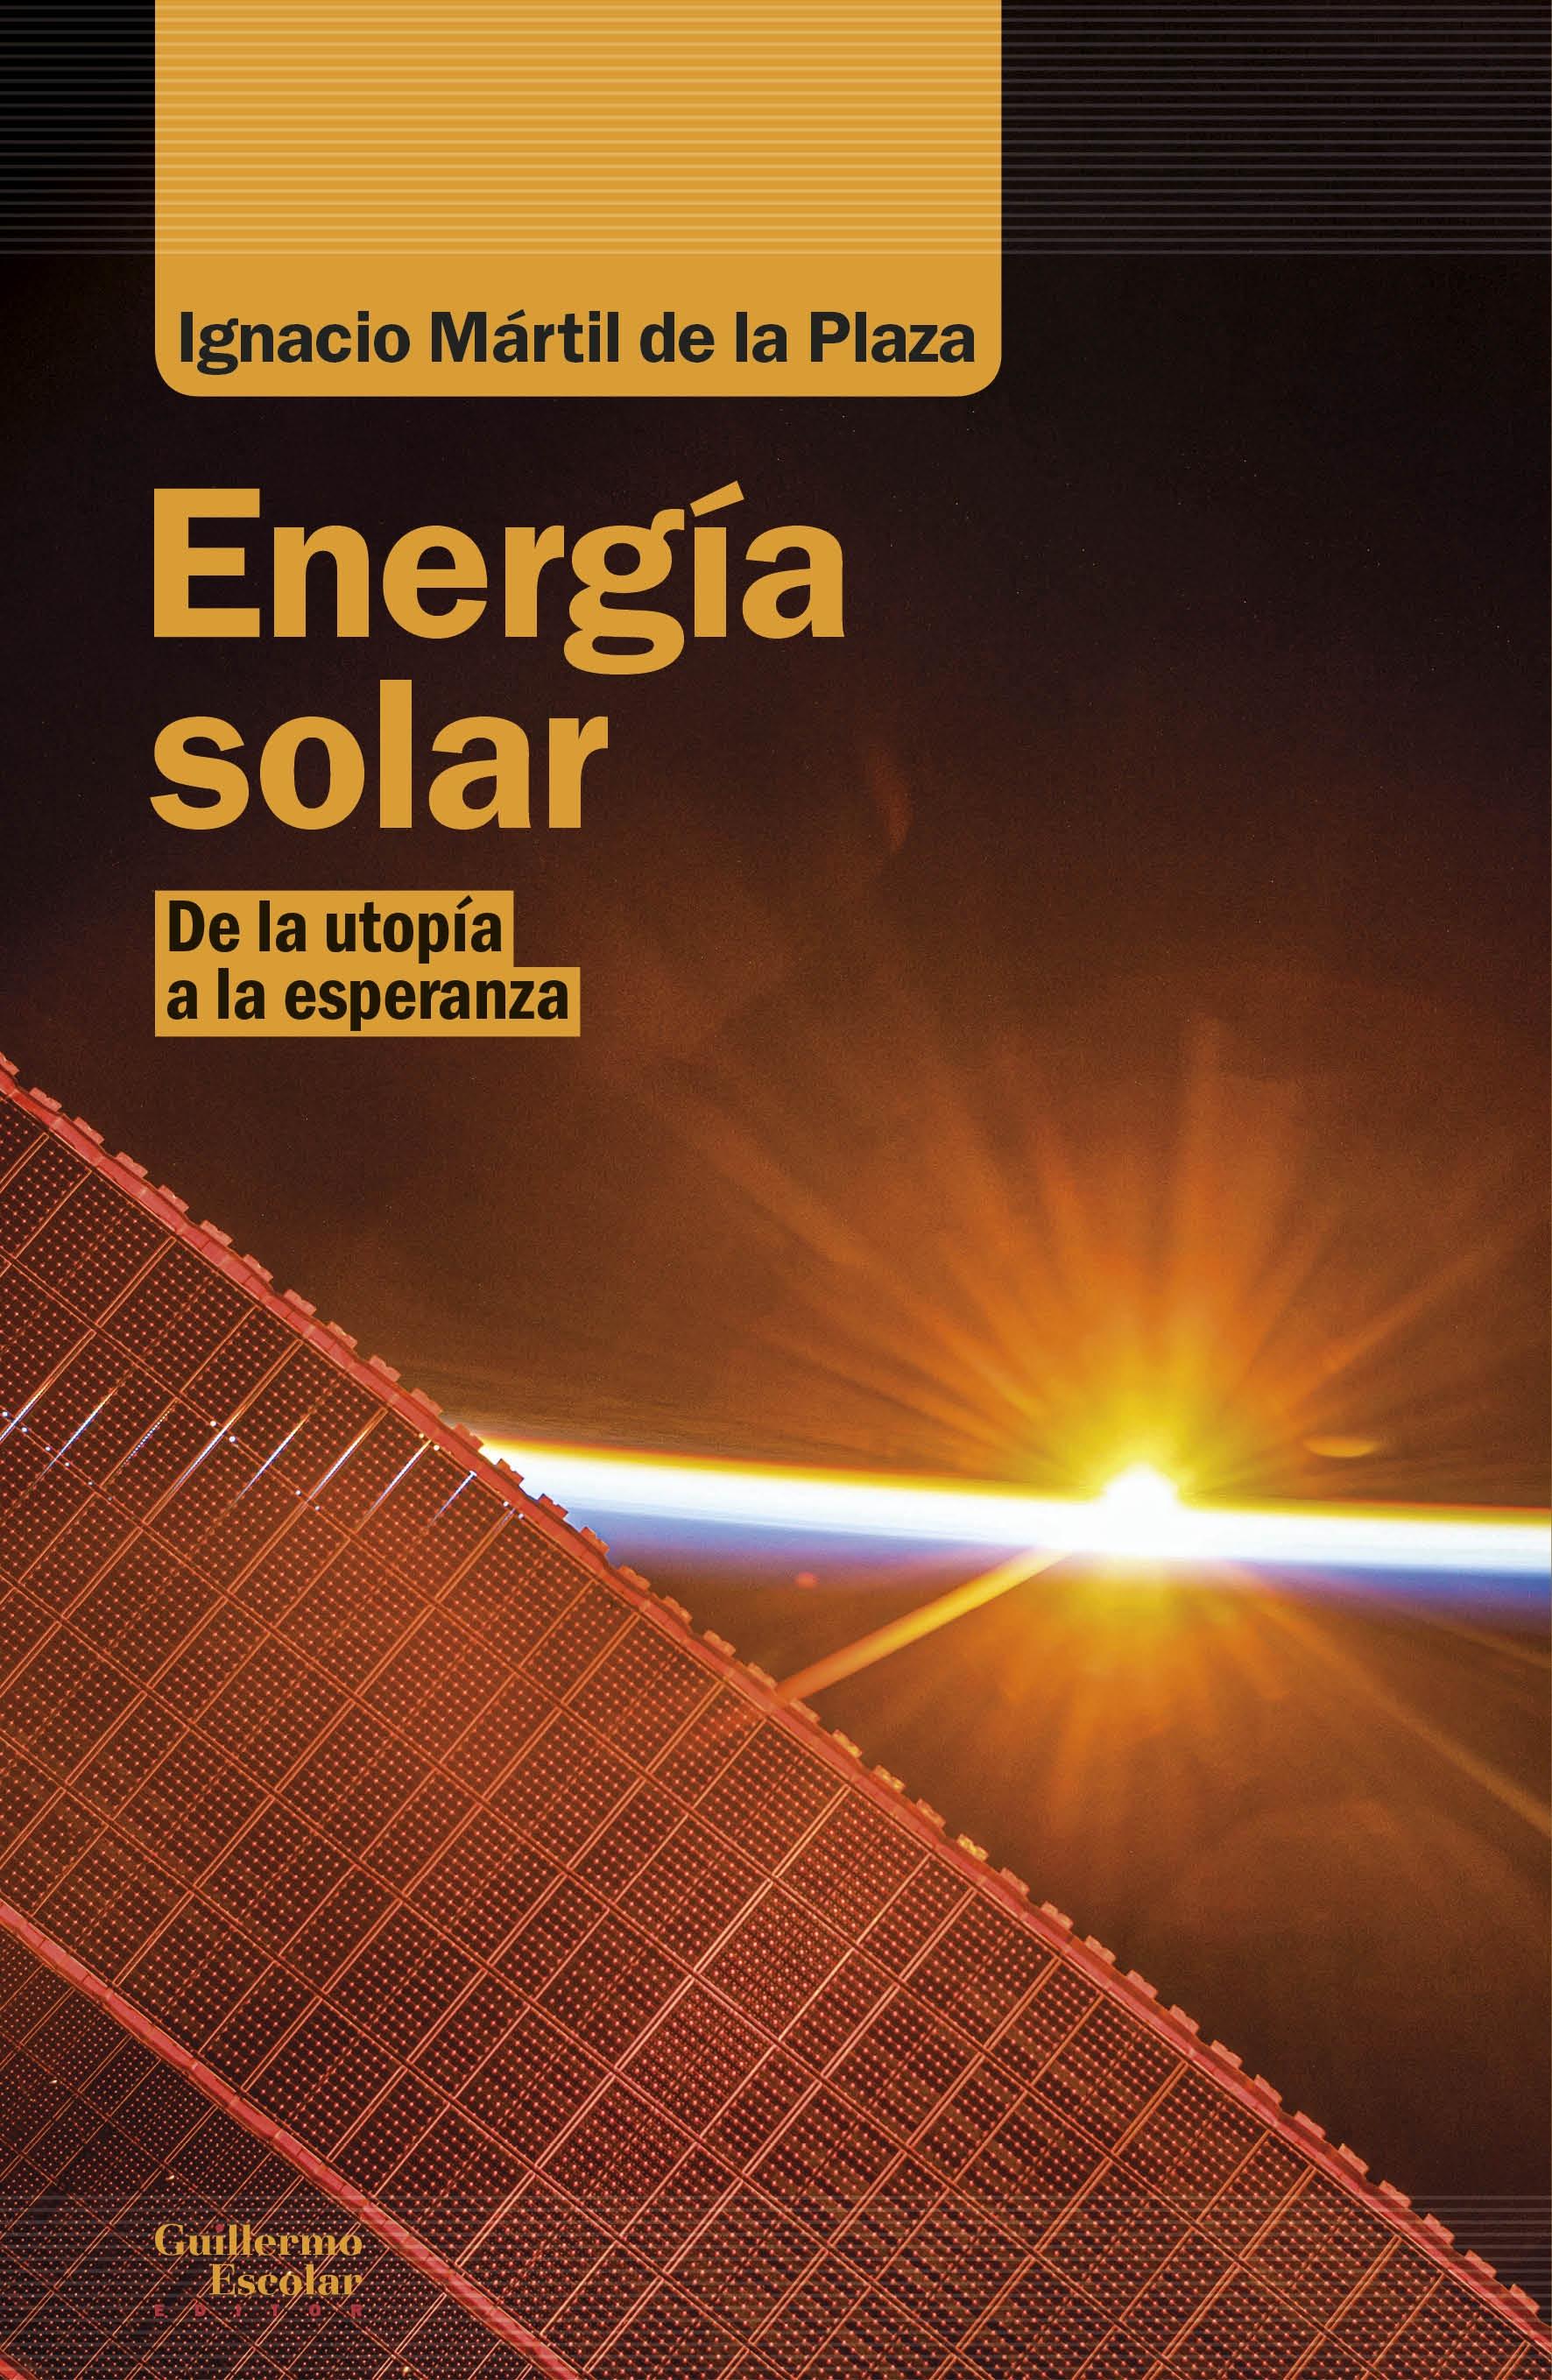 Energía solar "De la utopía a la esperanza". 